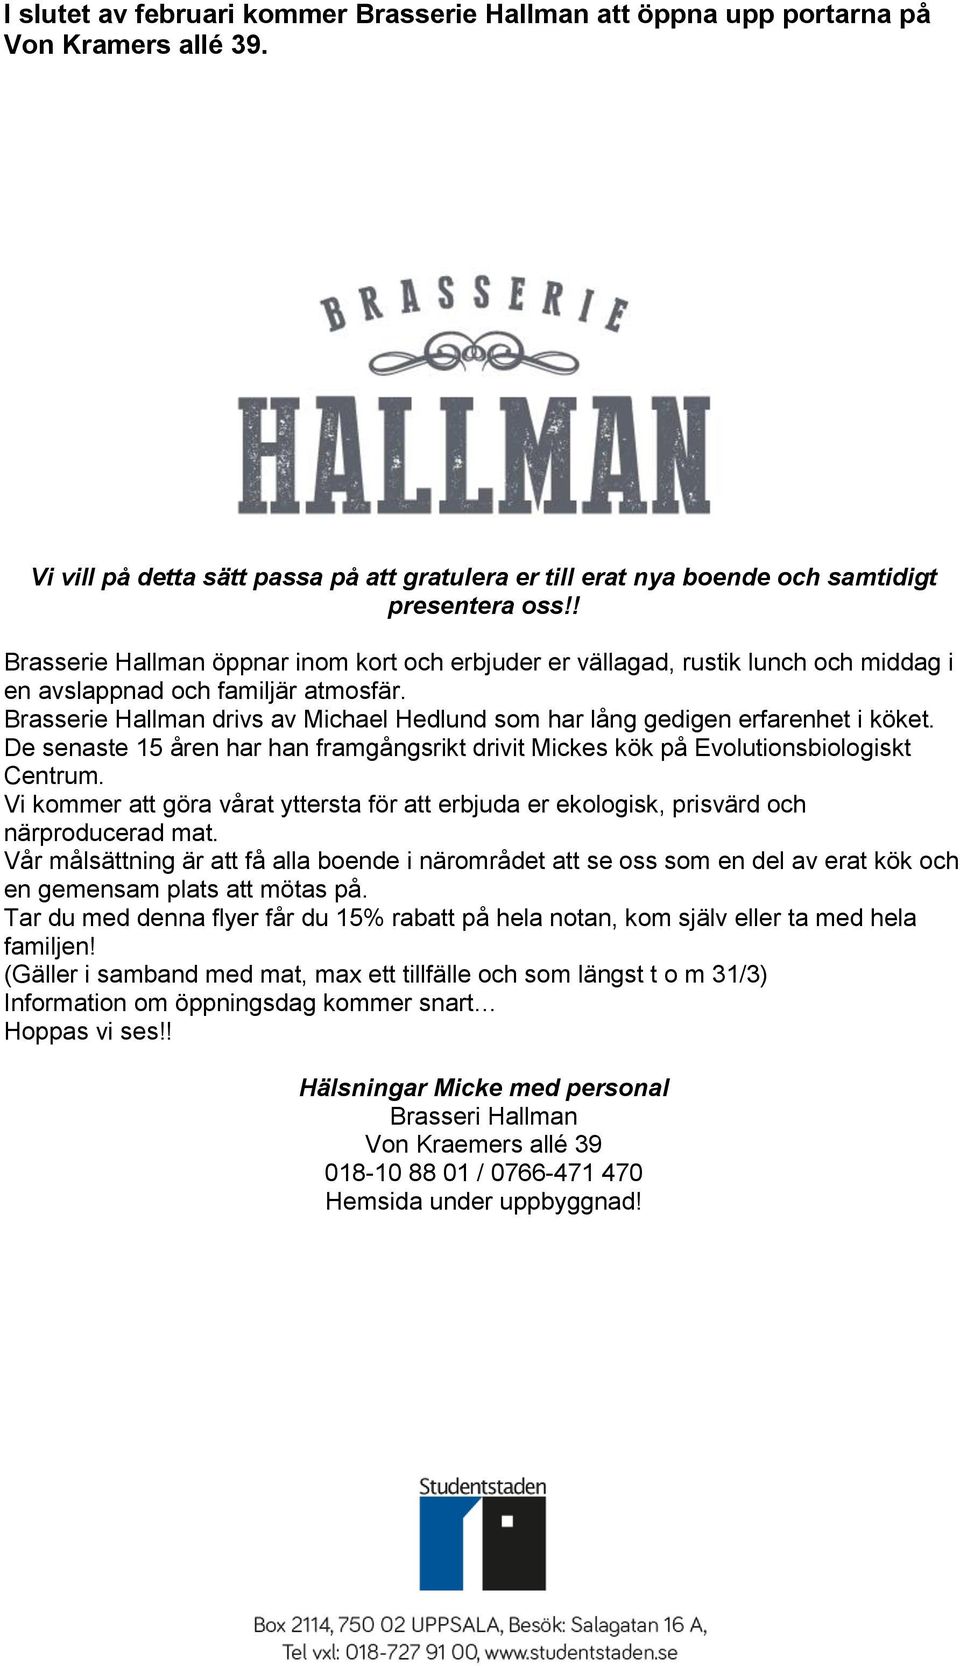 Brasserie Hallman drivs av Michael Hedlund som har lång gedigen erfarenhet i köket. De senaste 15 åren har han framgångsrikt drivit Mickes kök på Evolutionsbiologiskt Centrum.